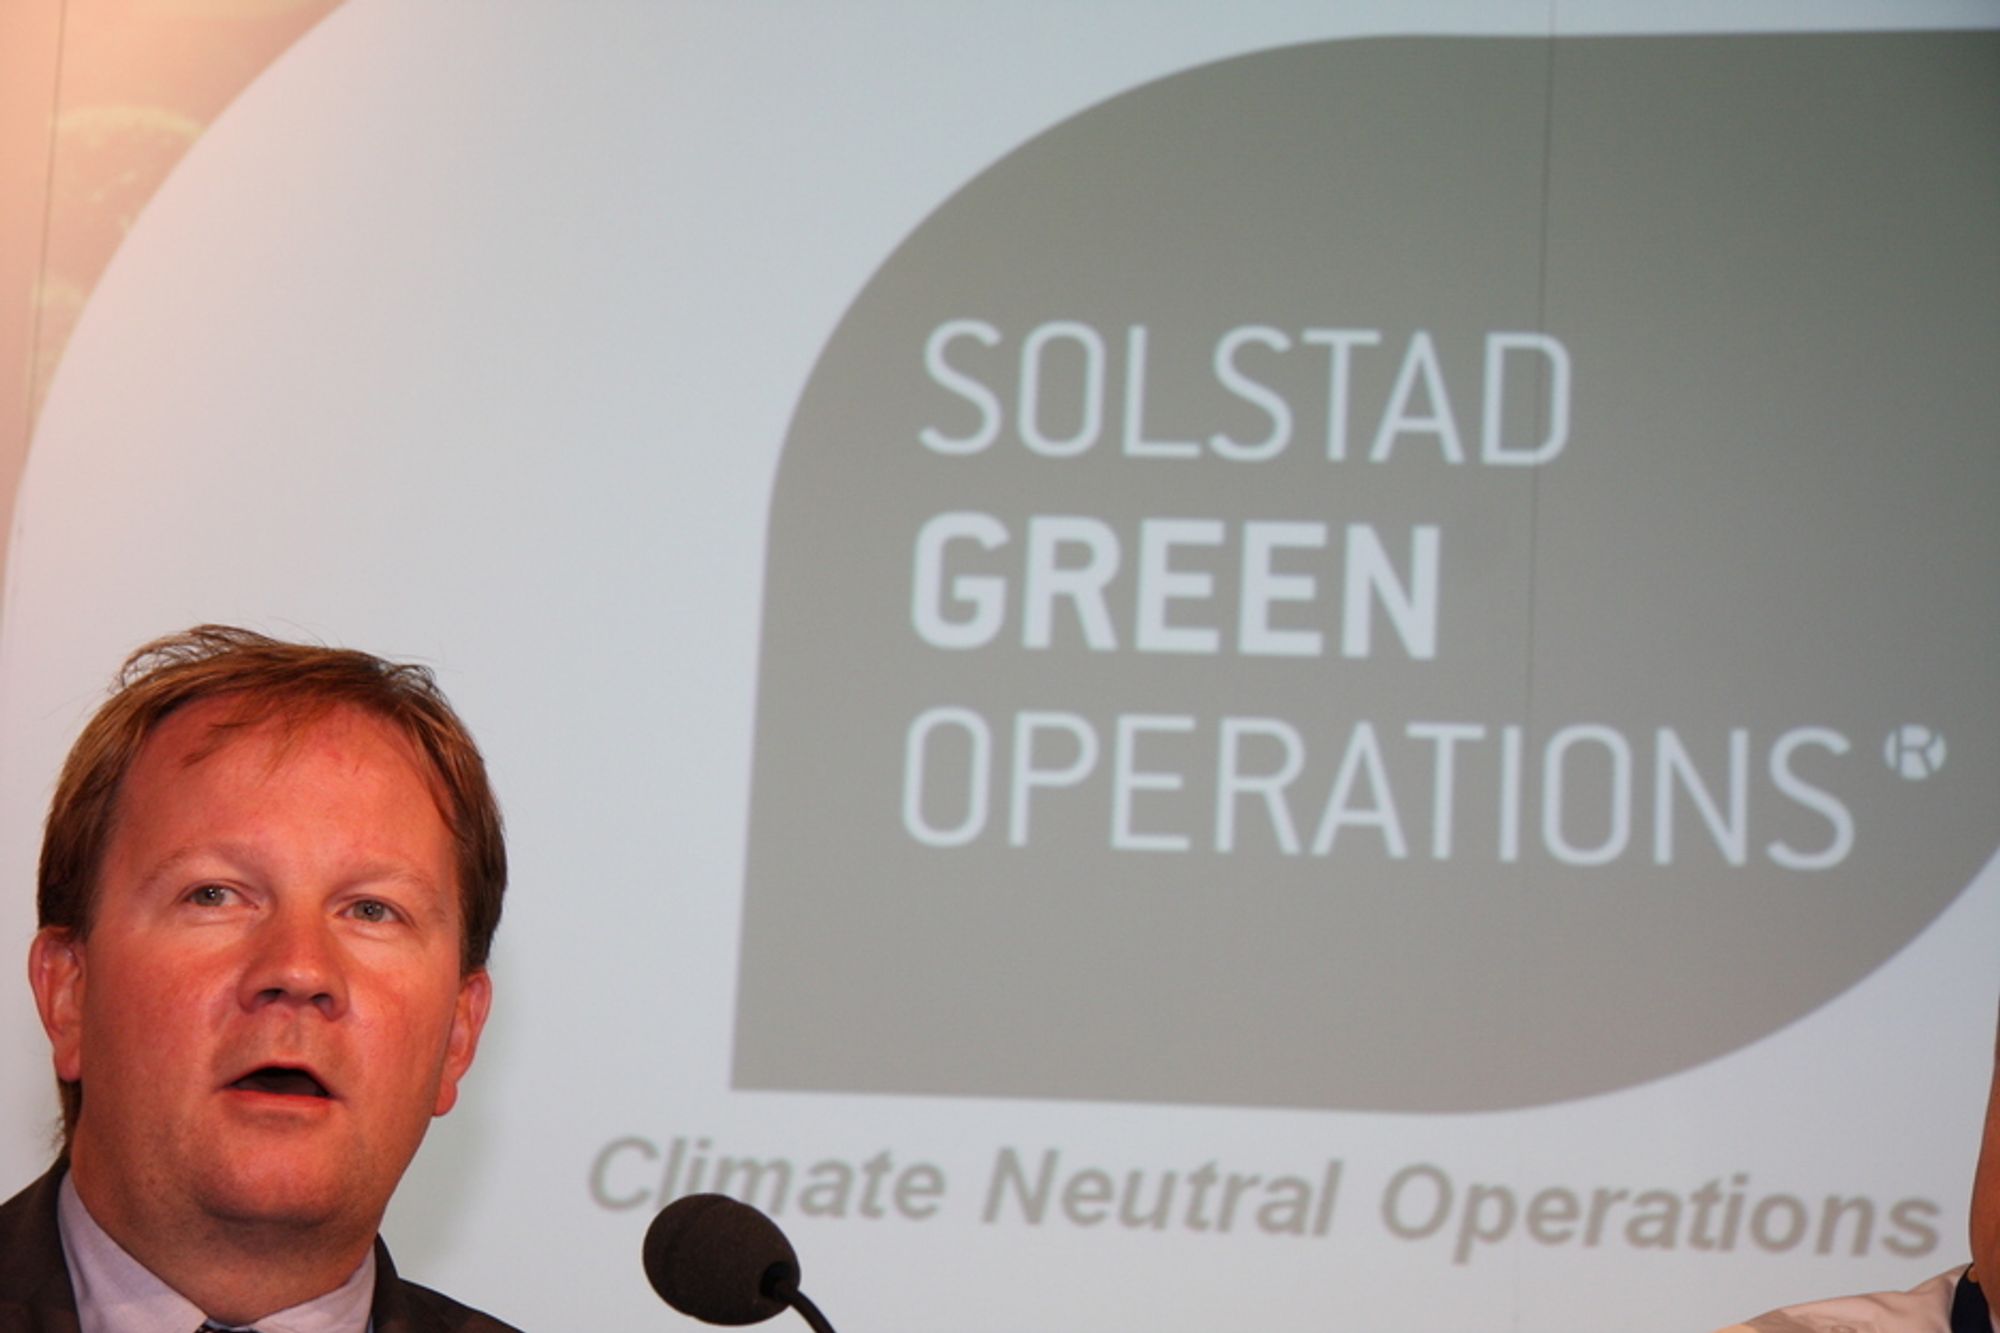 LETTJENTE PENGER: Lars Peder Solstad ser ingen grunn til at ikke kundene vil være med på grønn drift av skip. Det er de som betaler drivstoff og avgifter. Med 15-20 prosent redusert forbruk, er besparelsene store.